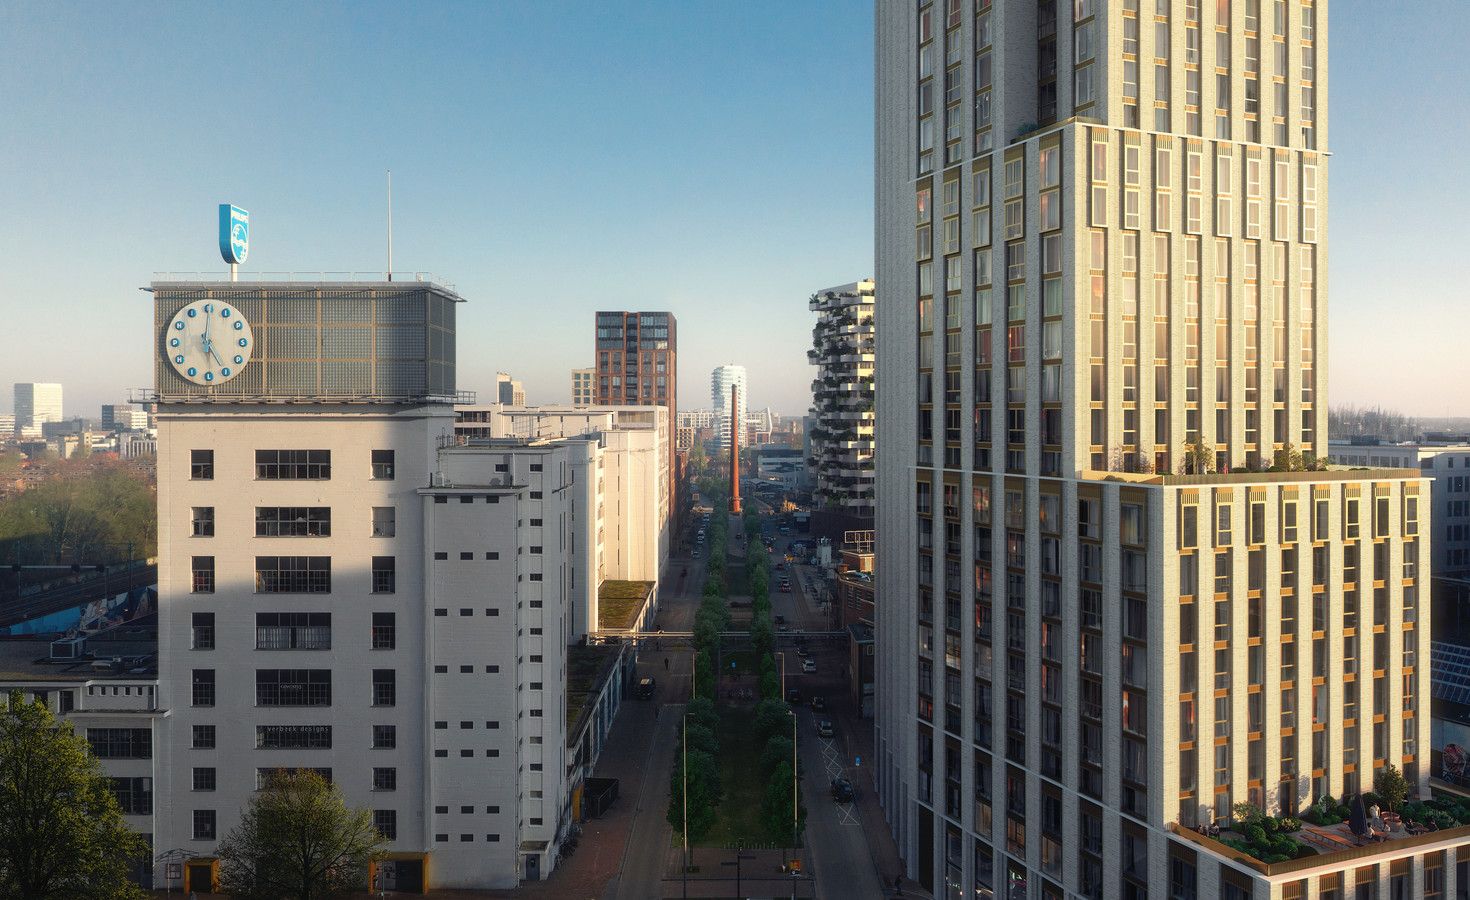 De woontoren Niko tegenover het Klokgebouw op Strijp-S in Eindhoven. De verspringende hoogtes zijn afgestemd op de gebouwen in de omgeving. Met 109 meter wordt dit de hoogste toren van Eindhoven. Voorlopig.